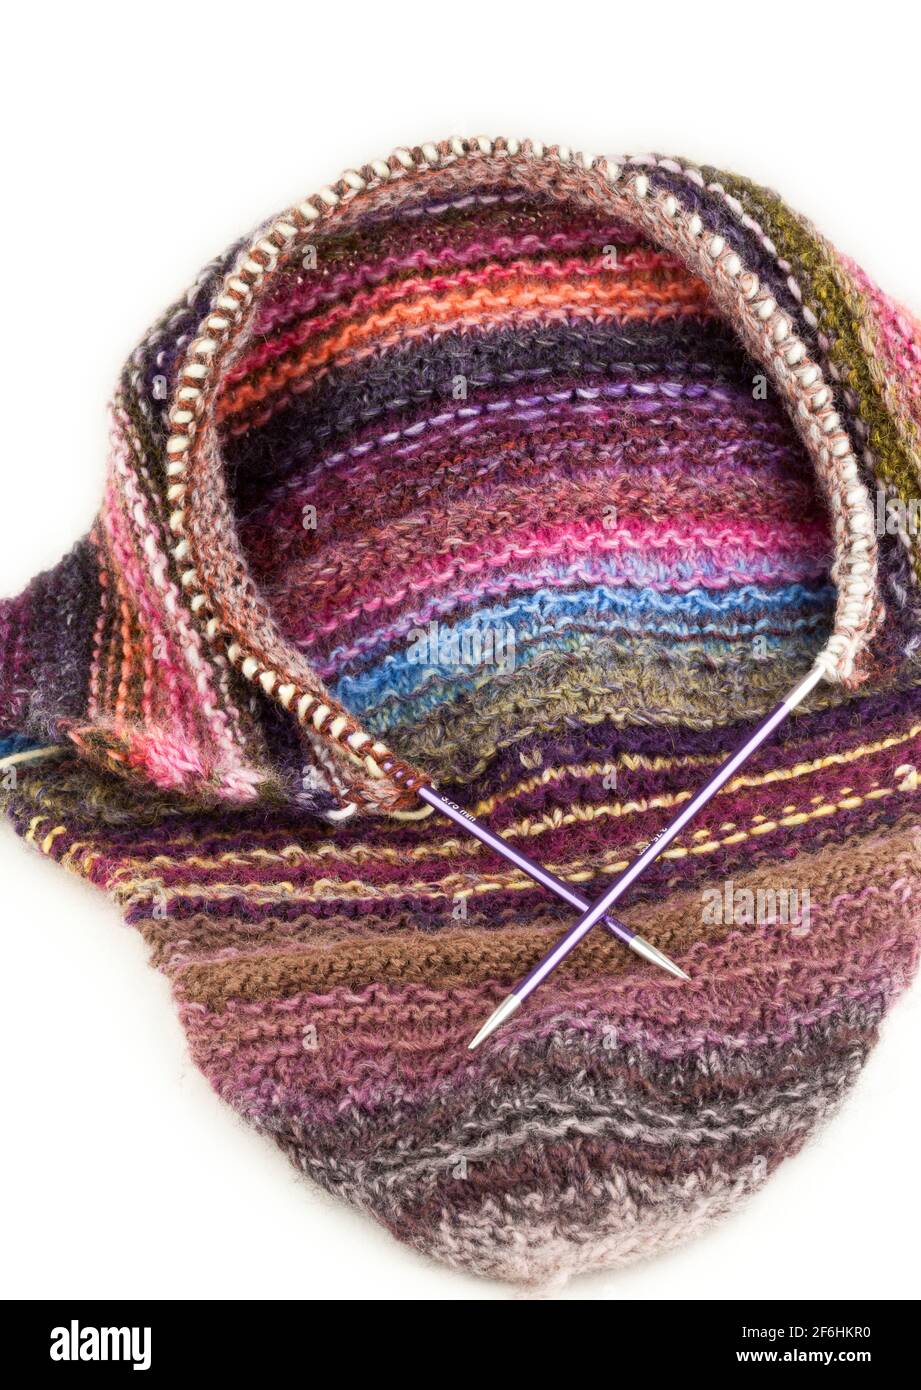 Knitting using  circular needles and yarn Stock Photo